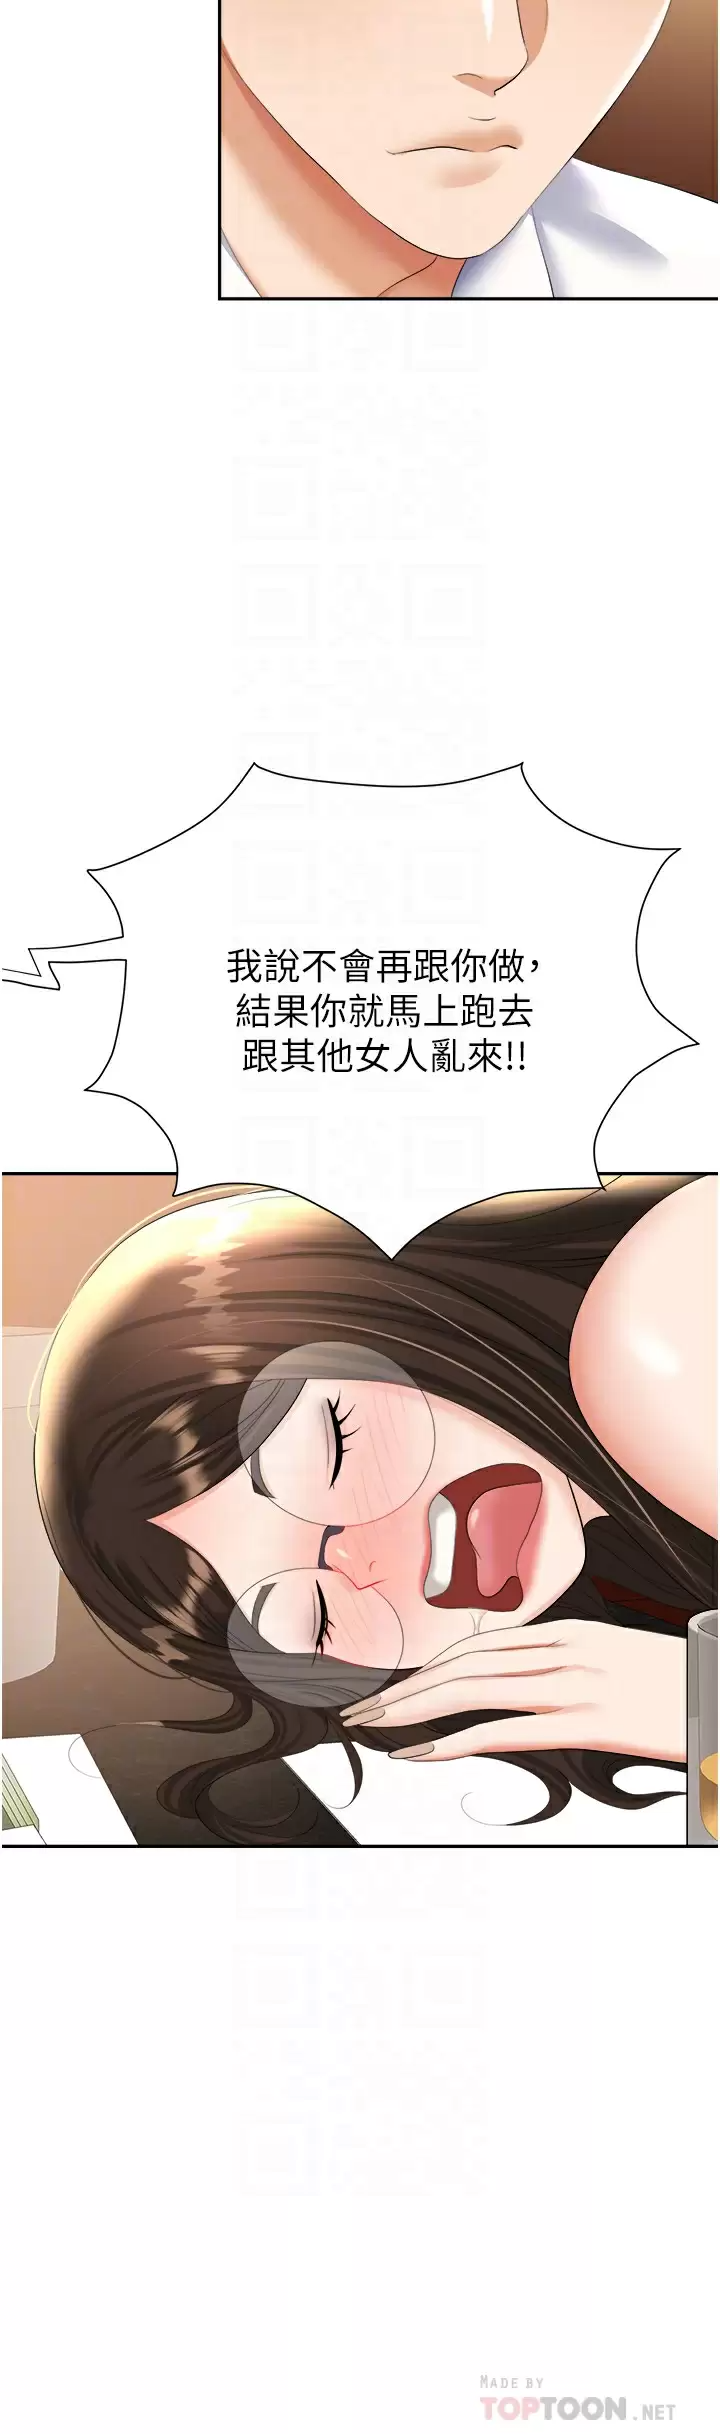 韩国污漫画 職場陷阱 第15话 你的胸部就是拿来乳交的! 14